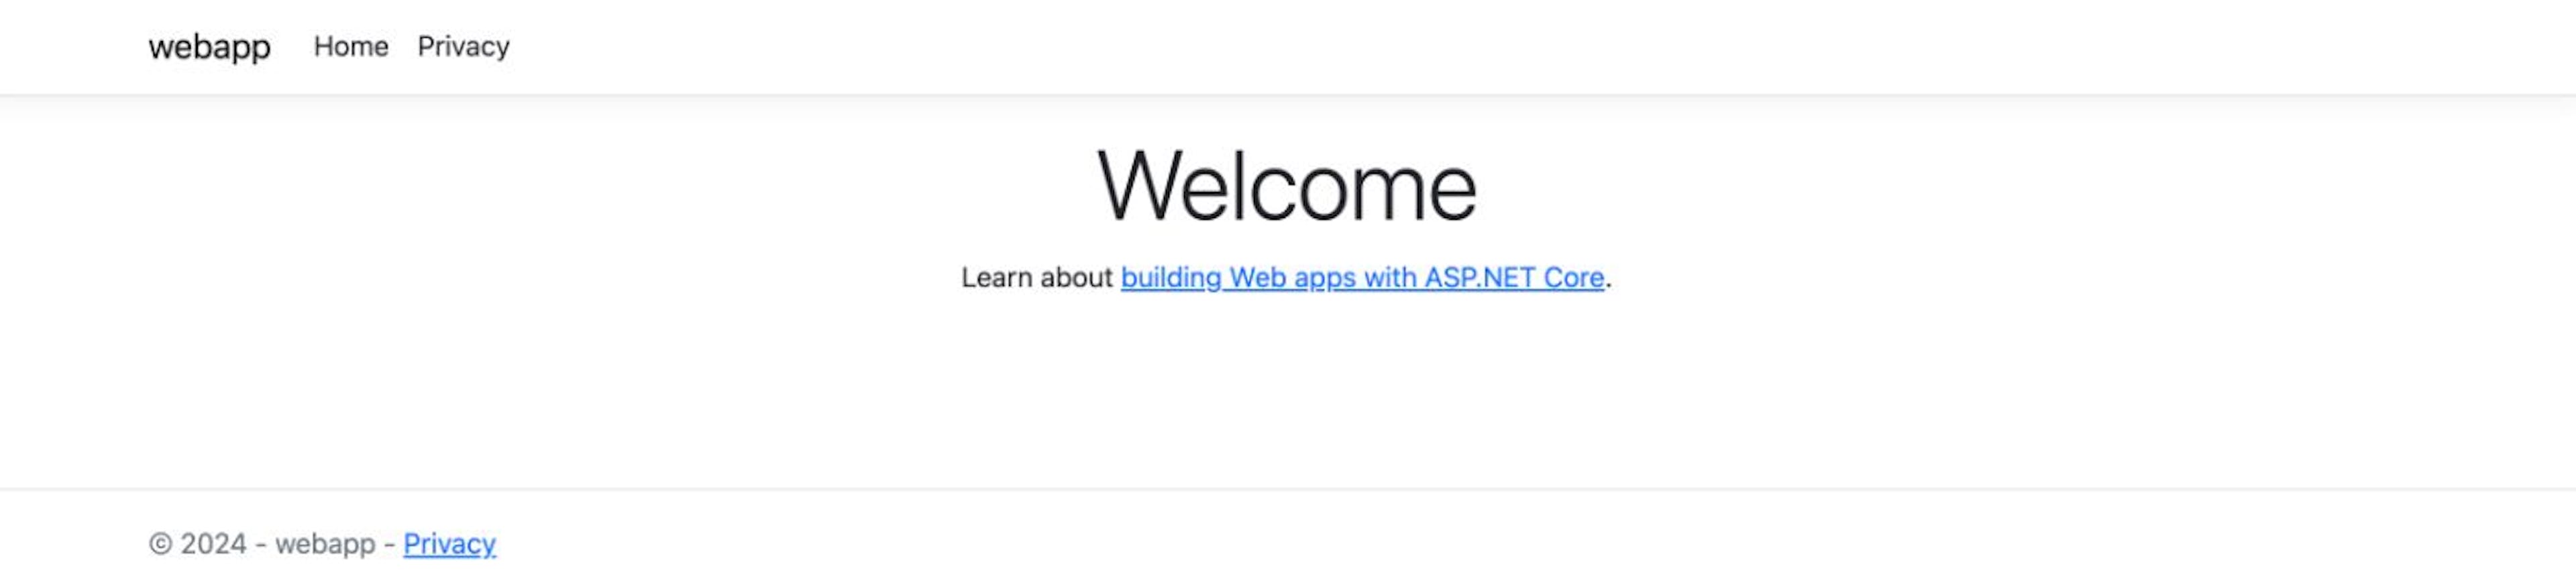 Aplicación web ASP.NET Core: página de inicio